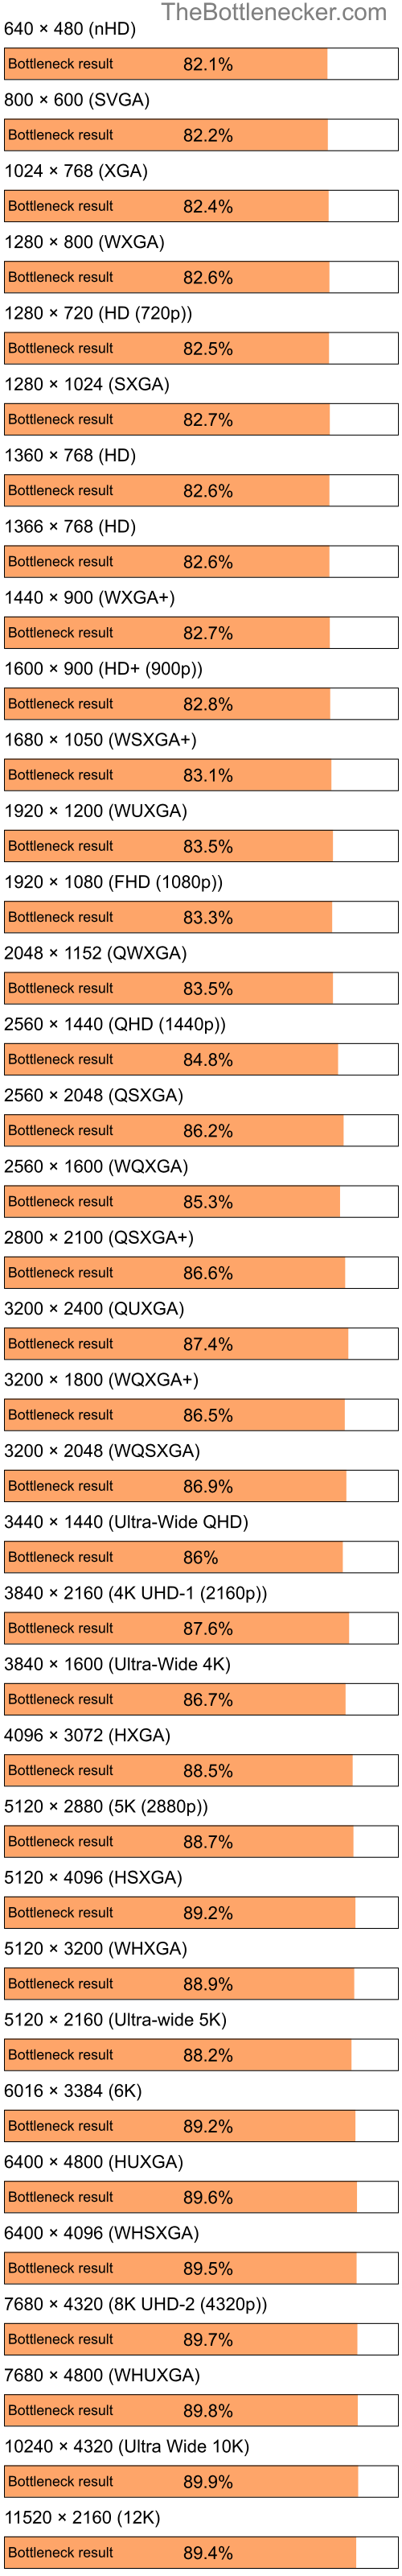 Bottleneck results by resolution for Intel Celeron and NVIDIA nForce 630M in General Tasks